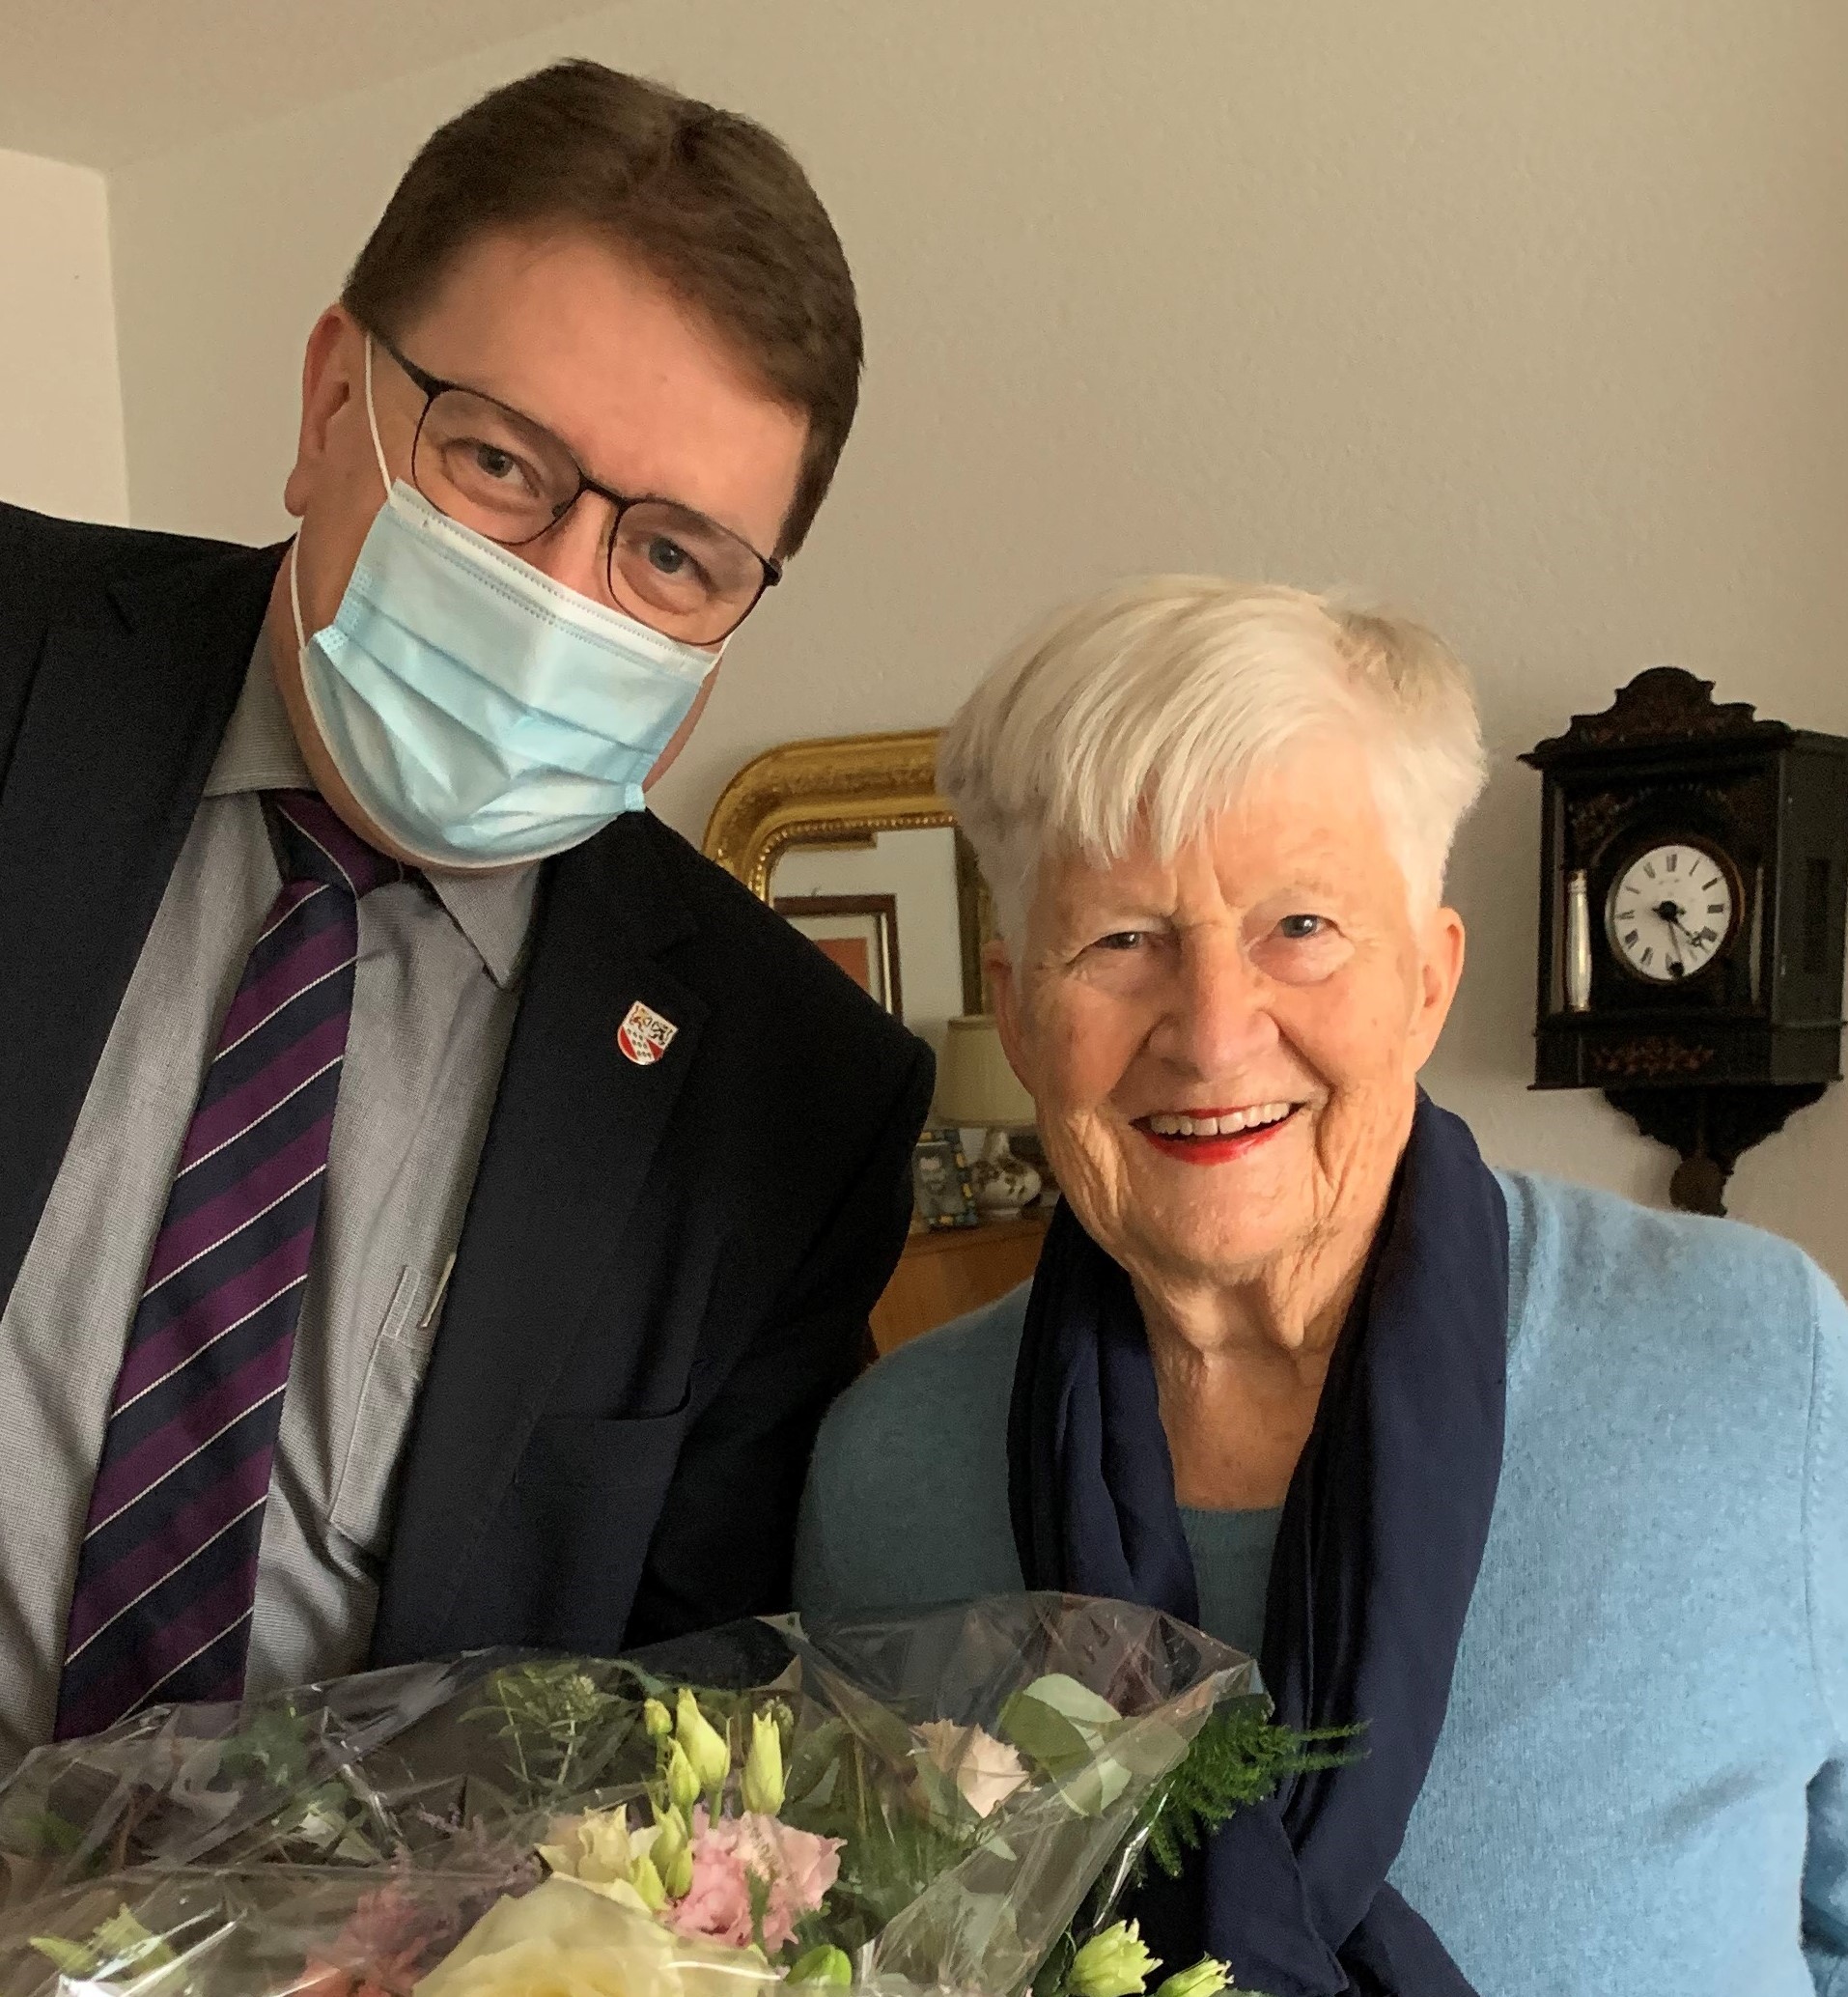 Am Sonntag, 31. Januar 2021, feierte Frau Lilian Kocum ihren 90. Geburtstag.

Die Gemeindebehörden gratulieren herzlichst!